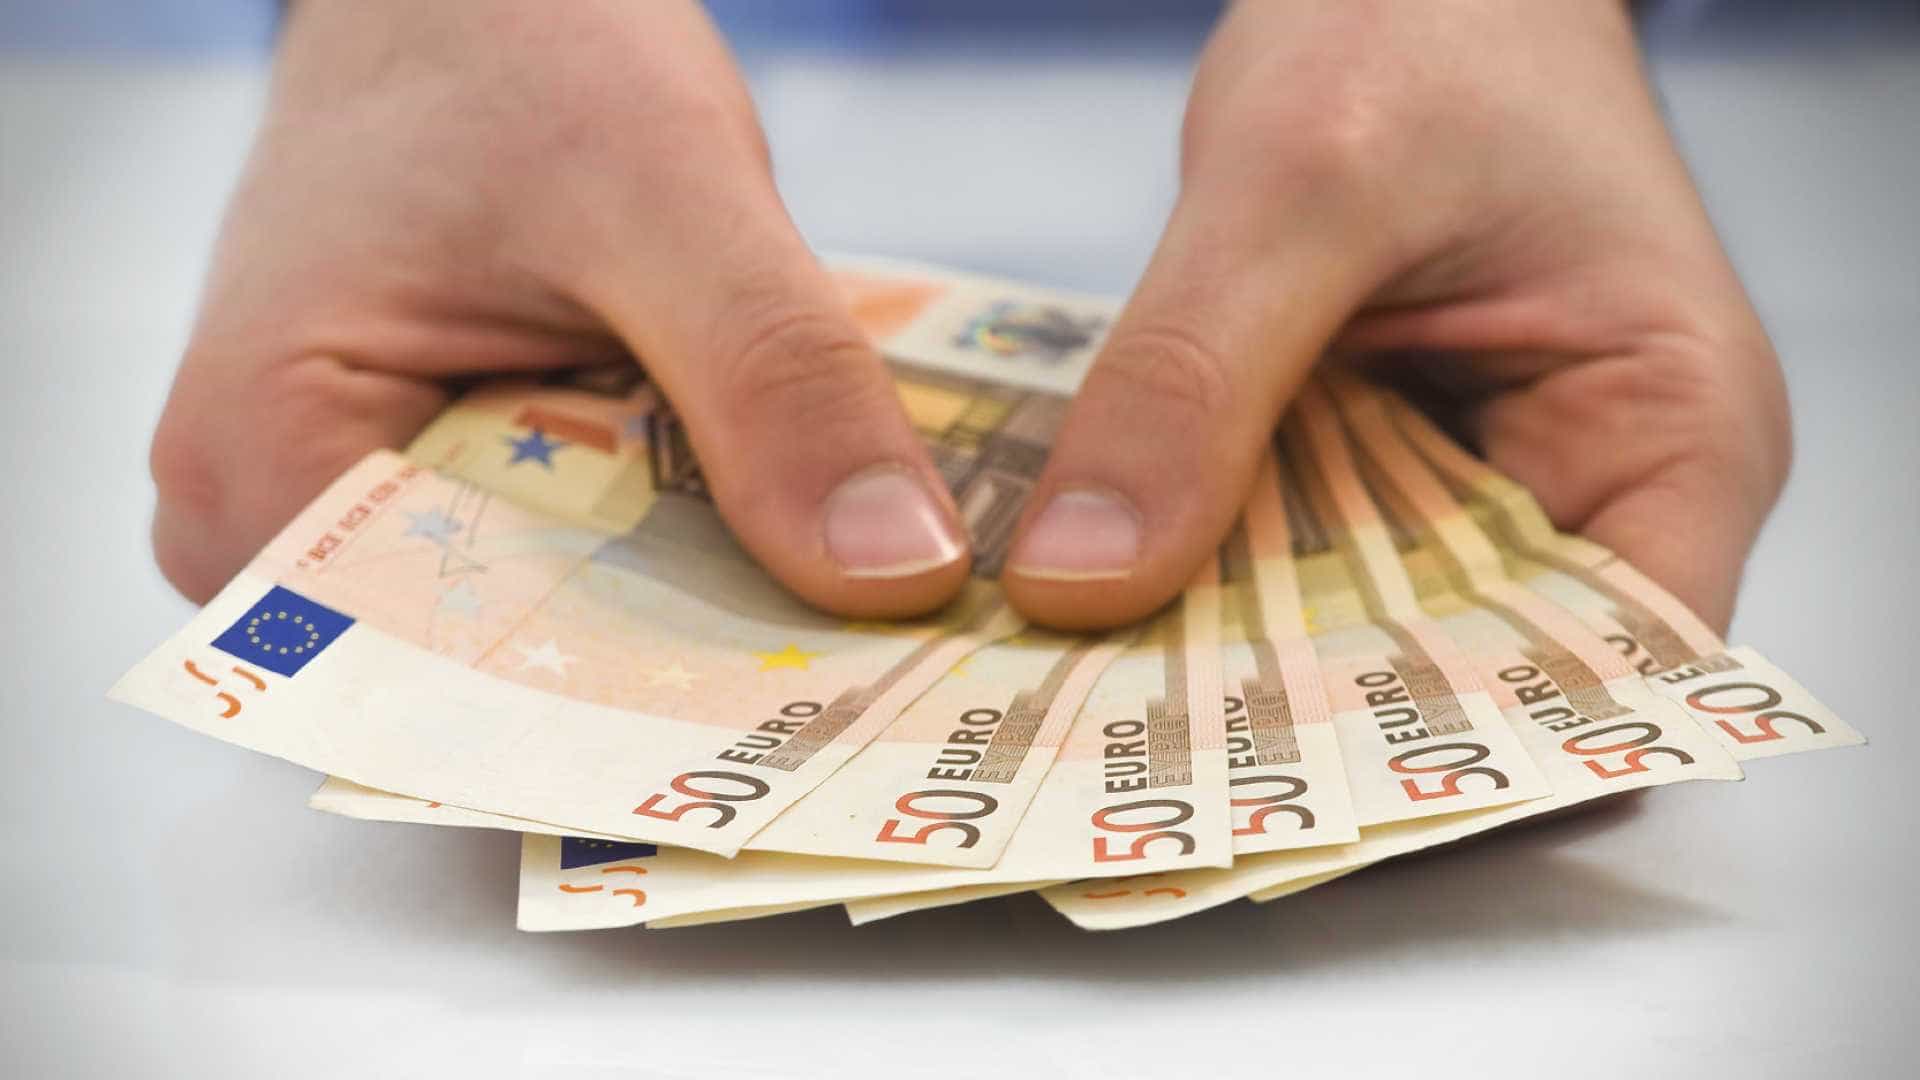 Quanto de dinheiro preciso para ir morar em portugal Fizemos As Contas Saiba Quanto Dinheiro Precisa Para Viver Em Portugal Com Dignidade Morar Em Portugal